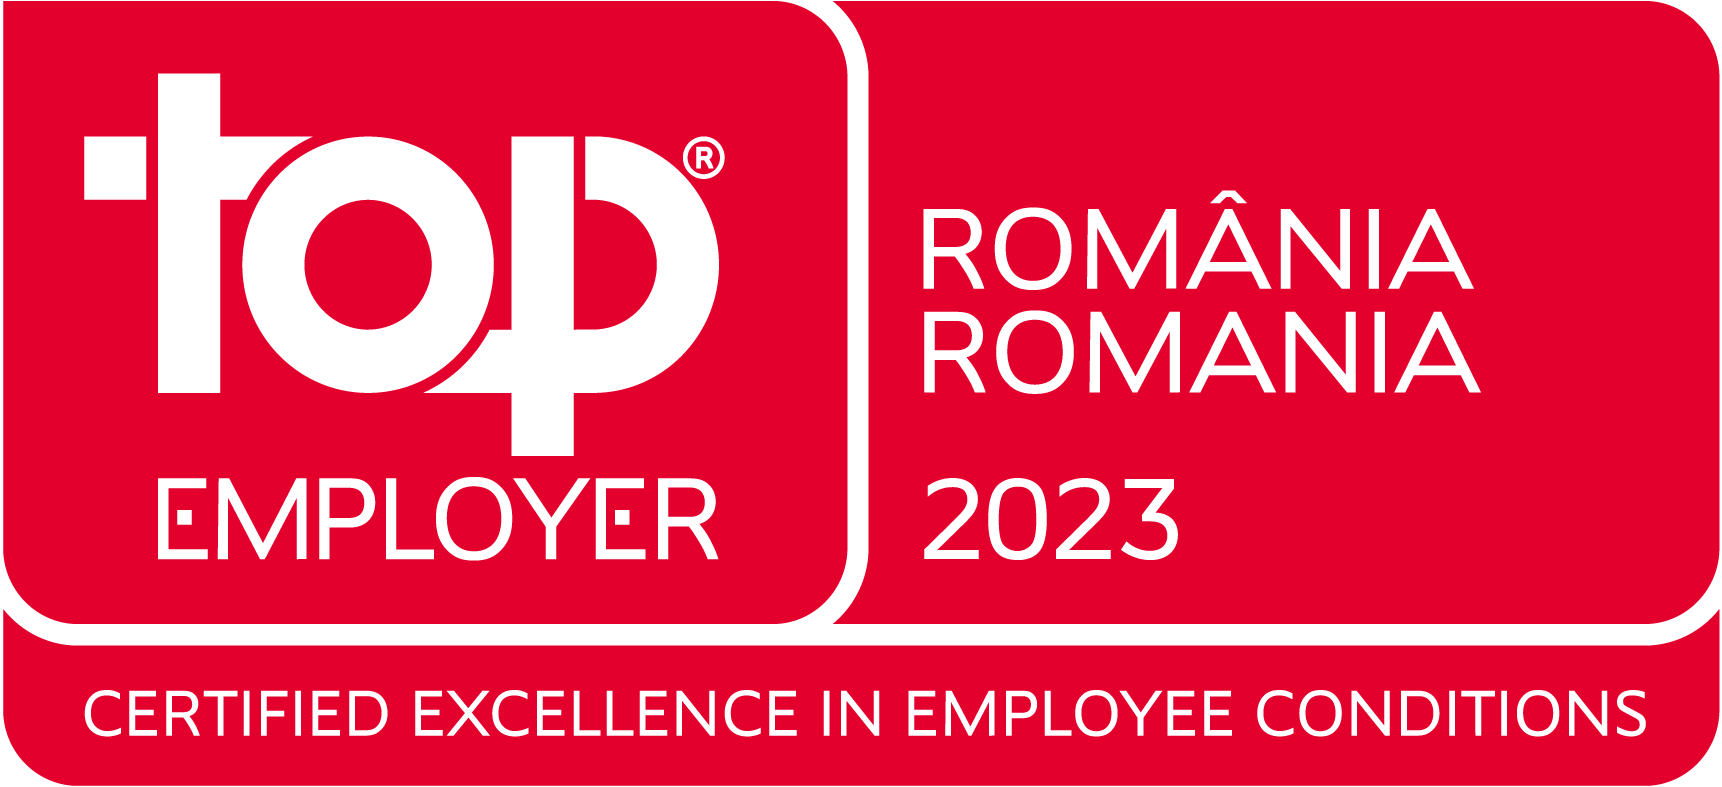 Top Employer Romania